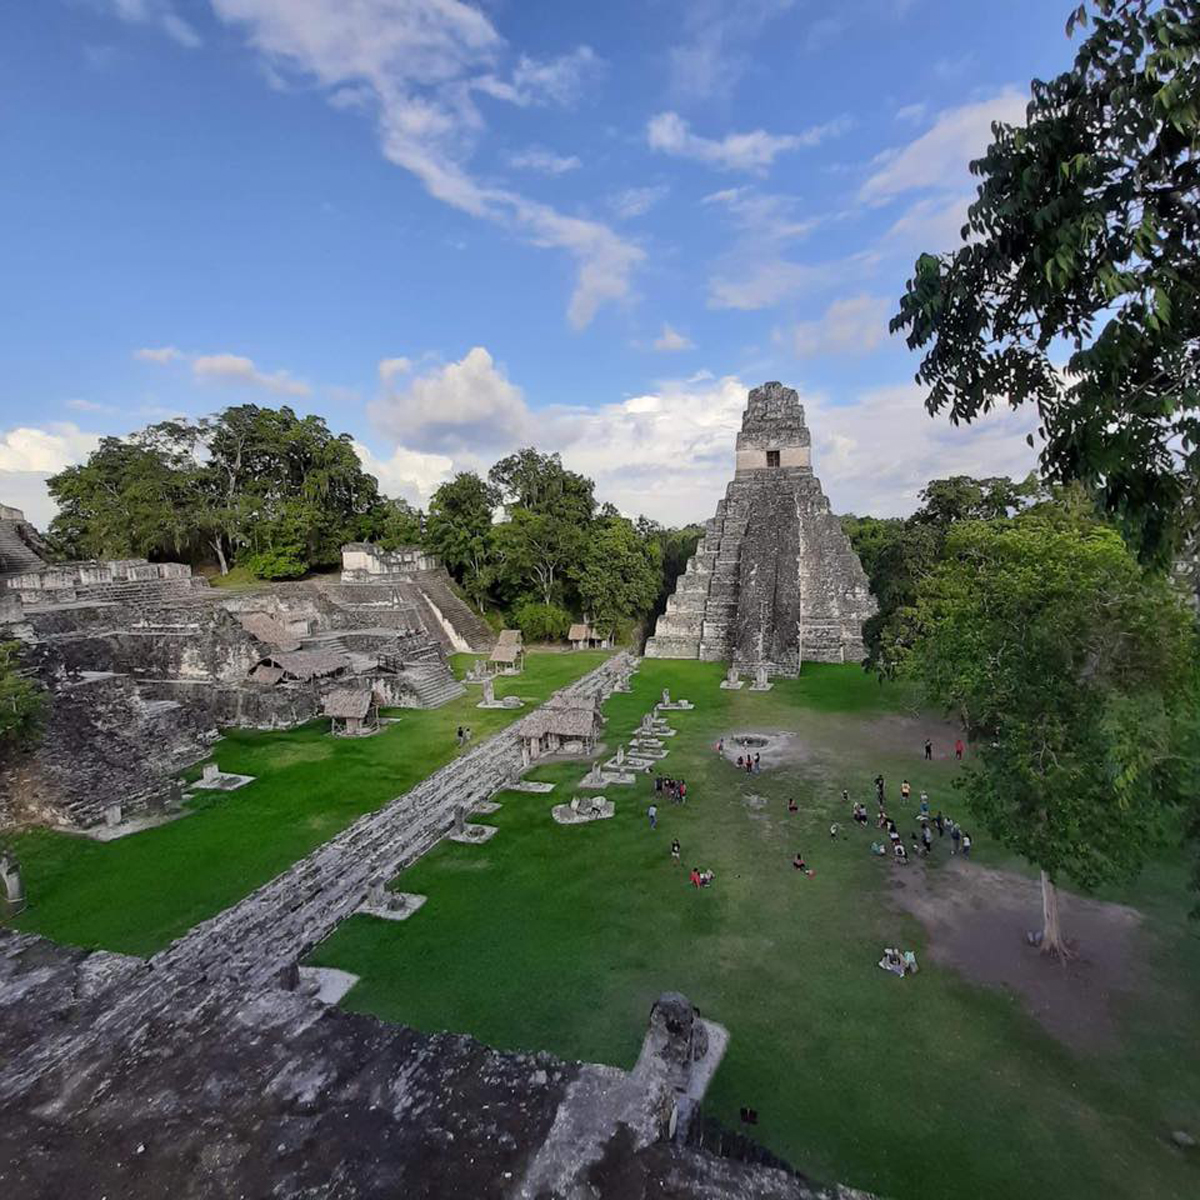 A partir del 31 de diciembre próximo entra en vigencia la prohibición del uso de plástico de un solo uso y duroport en el Parque Nacional Tikal. (Foto Prensa Libre: Dony Stewart)